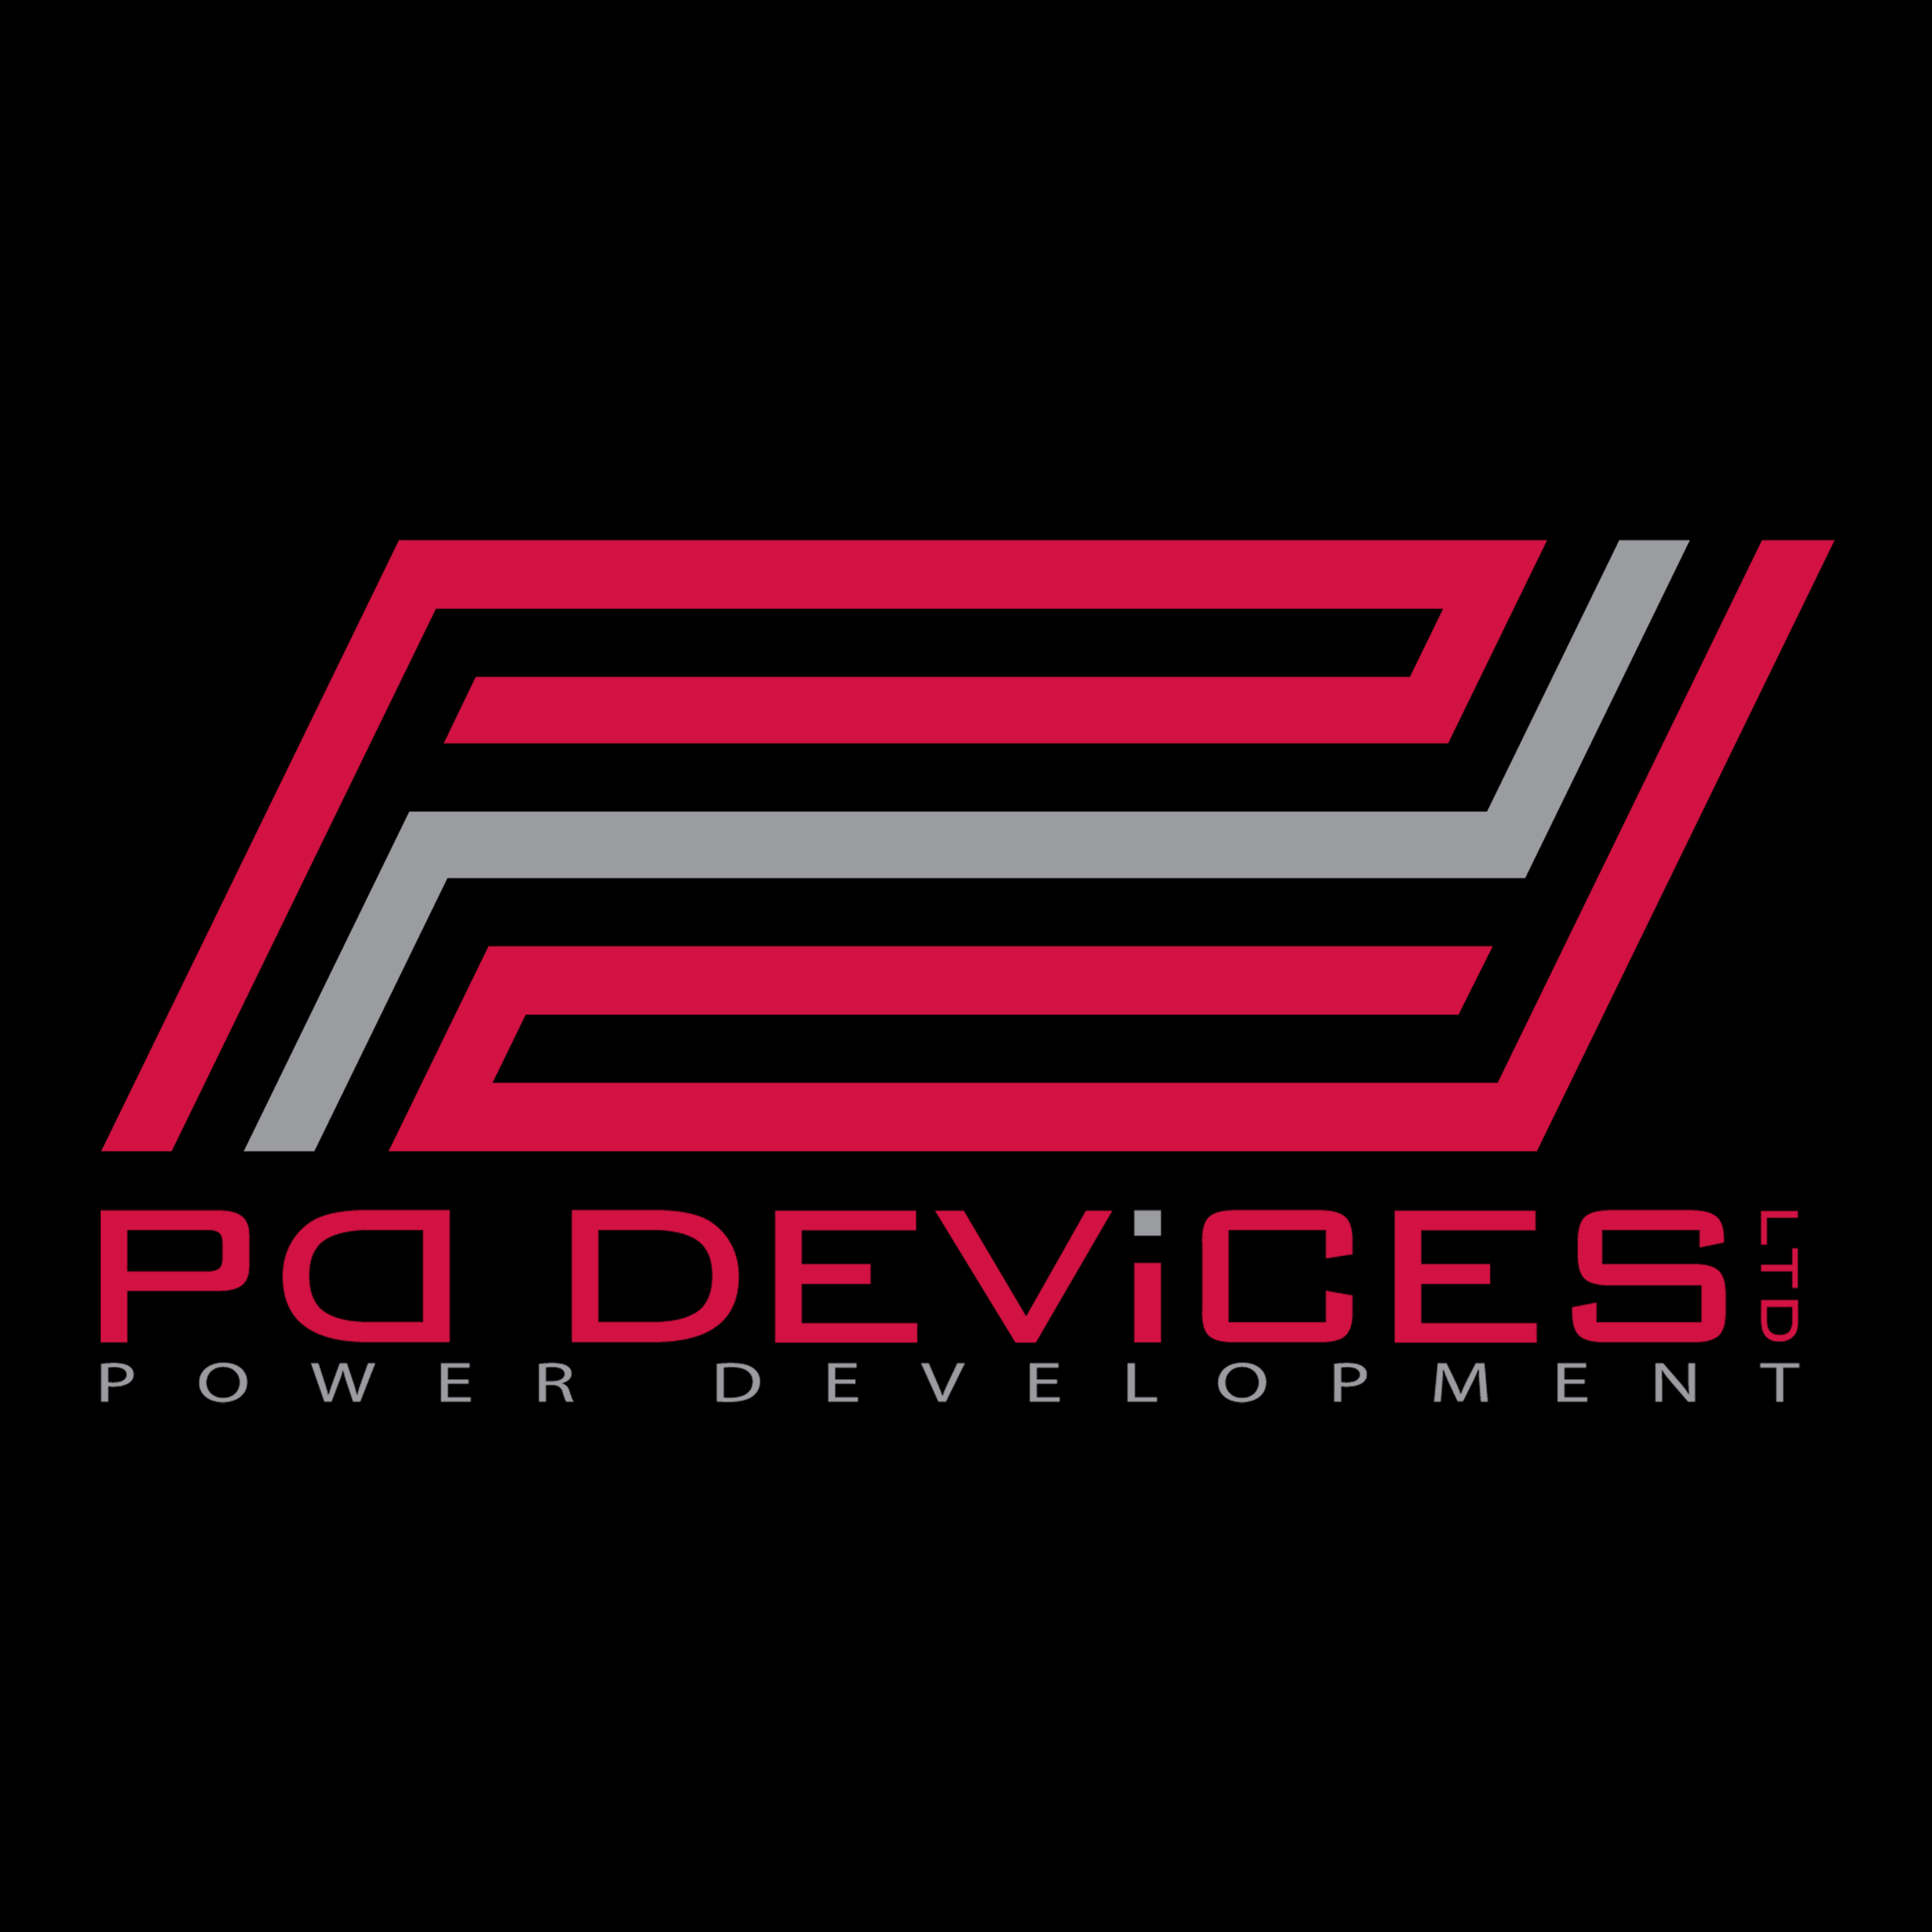 PD Devices Ltd